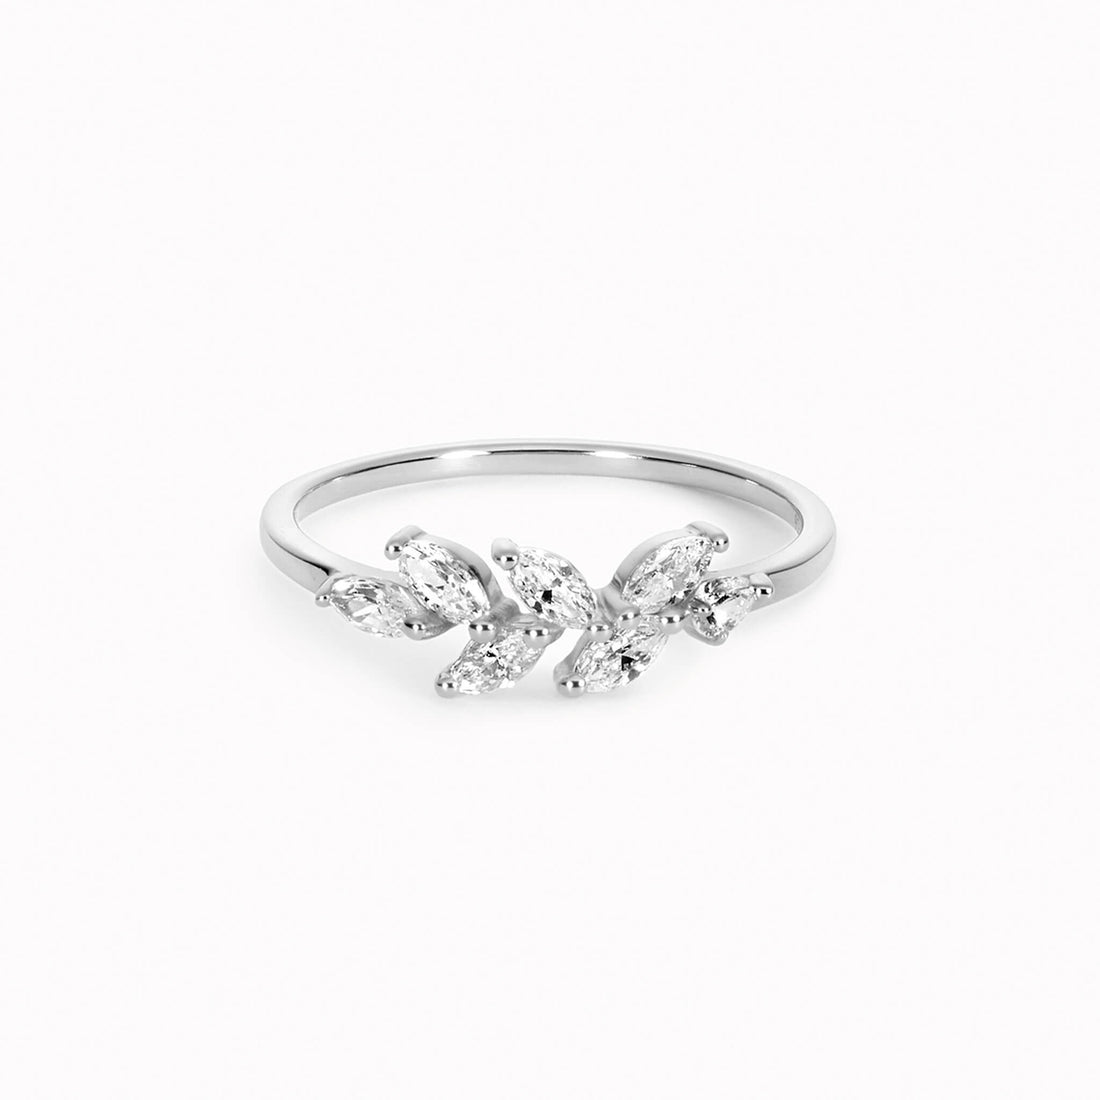 Silver Leaf Ring - Freya